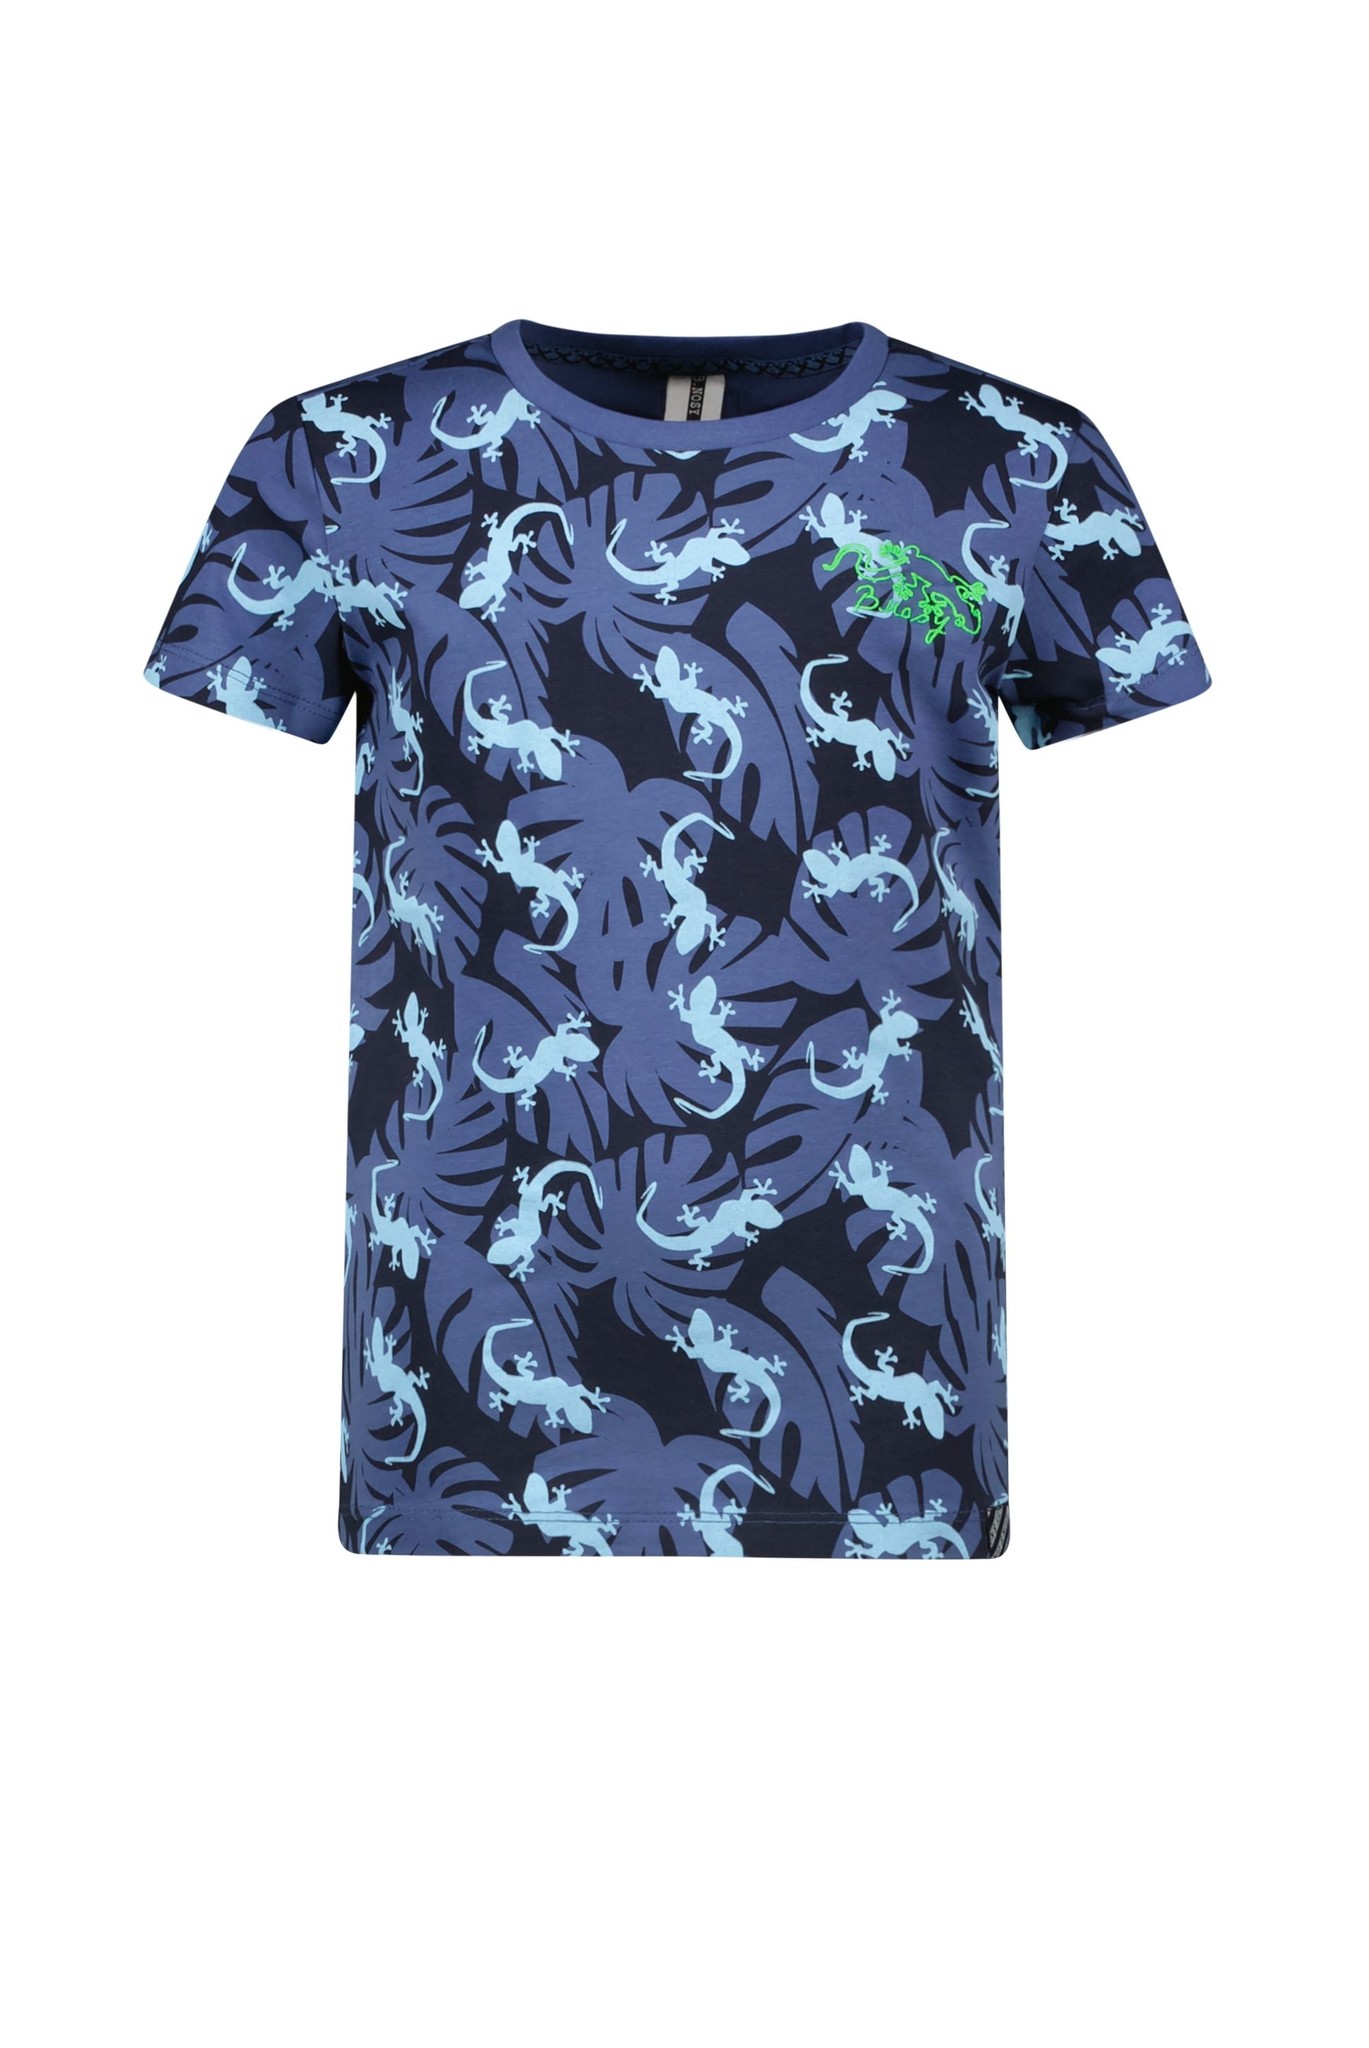 B.Nosy Jongens t-shirt AOP - Gecko blauw AOP